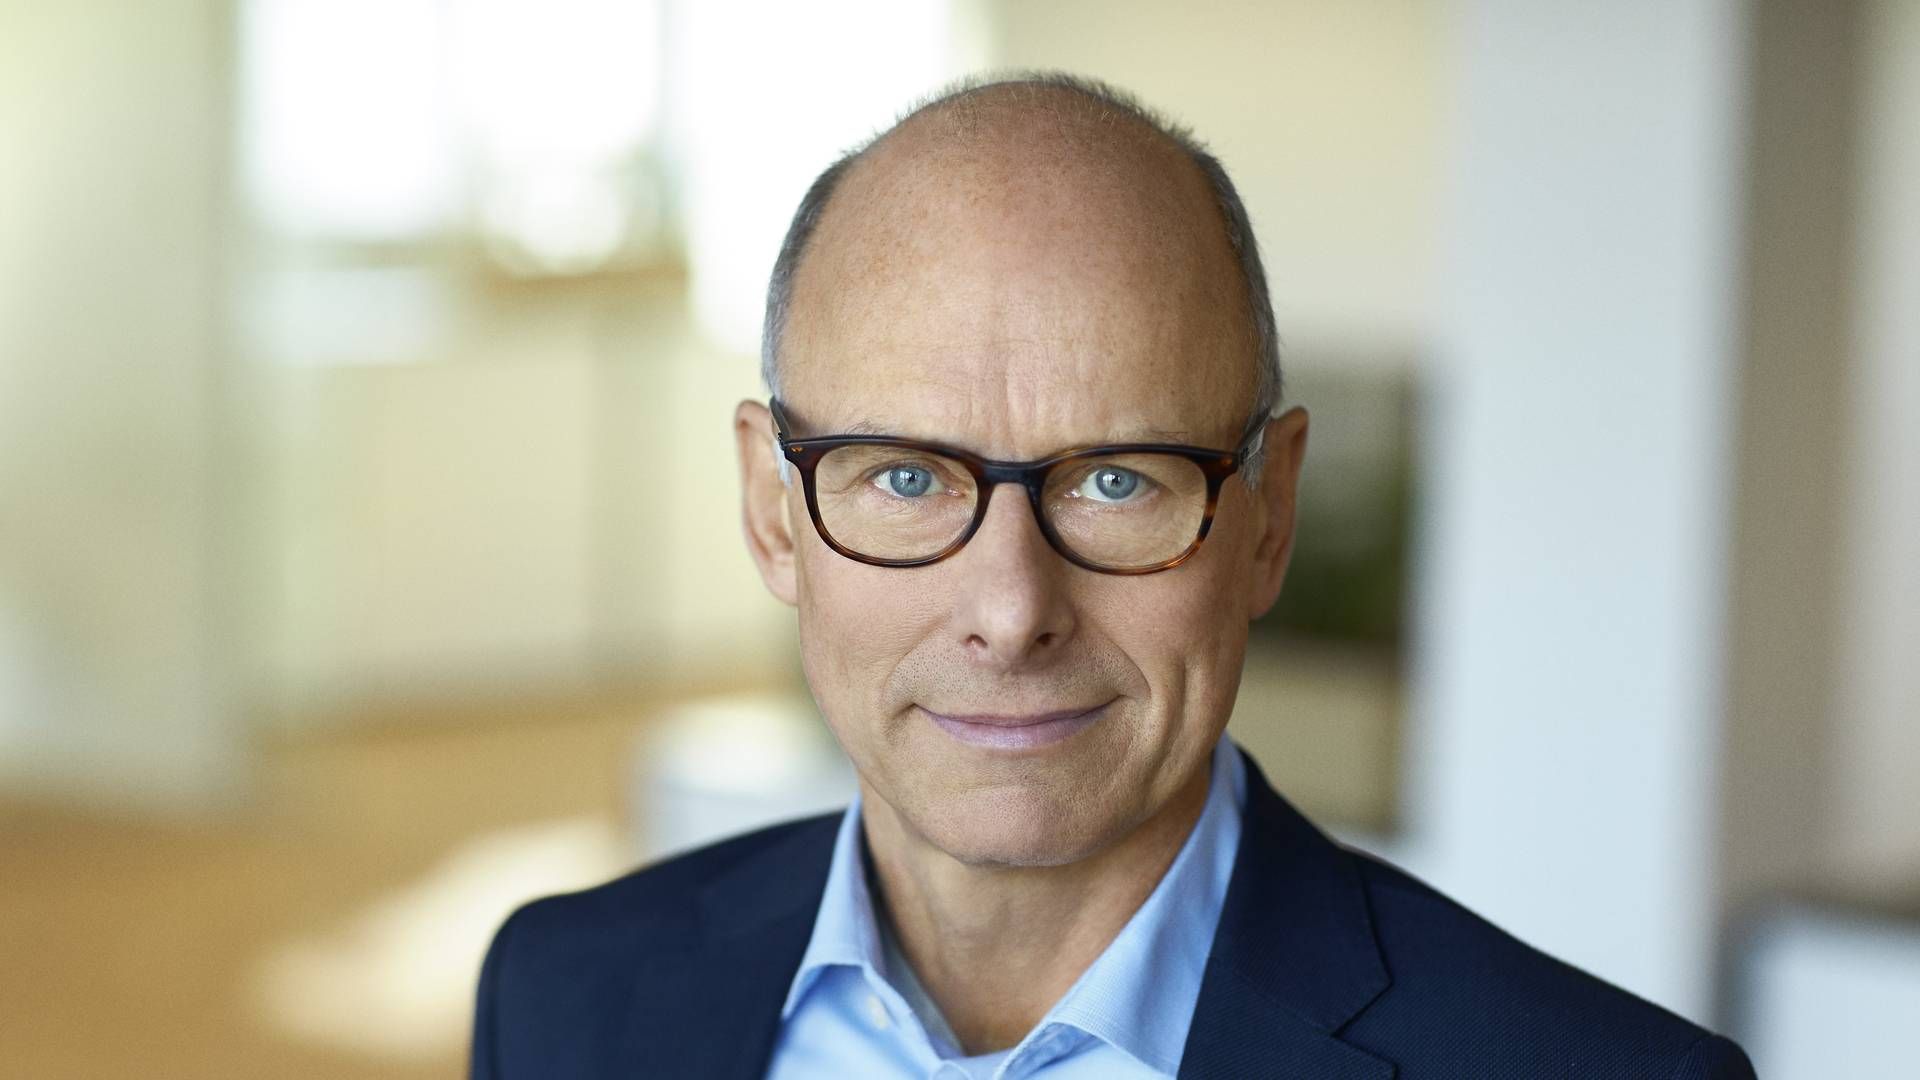 Adm. direktør i Simcorp, Klaus Holse, har solgt aktier for næsten 10 mio. kr. i den virksomhed, han leder. | Foto: PR